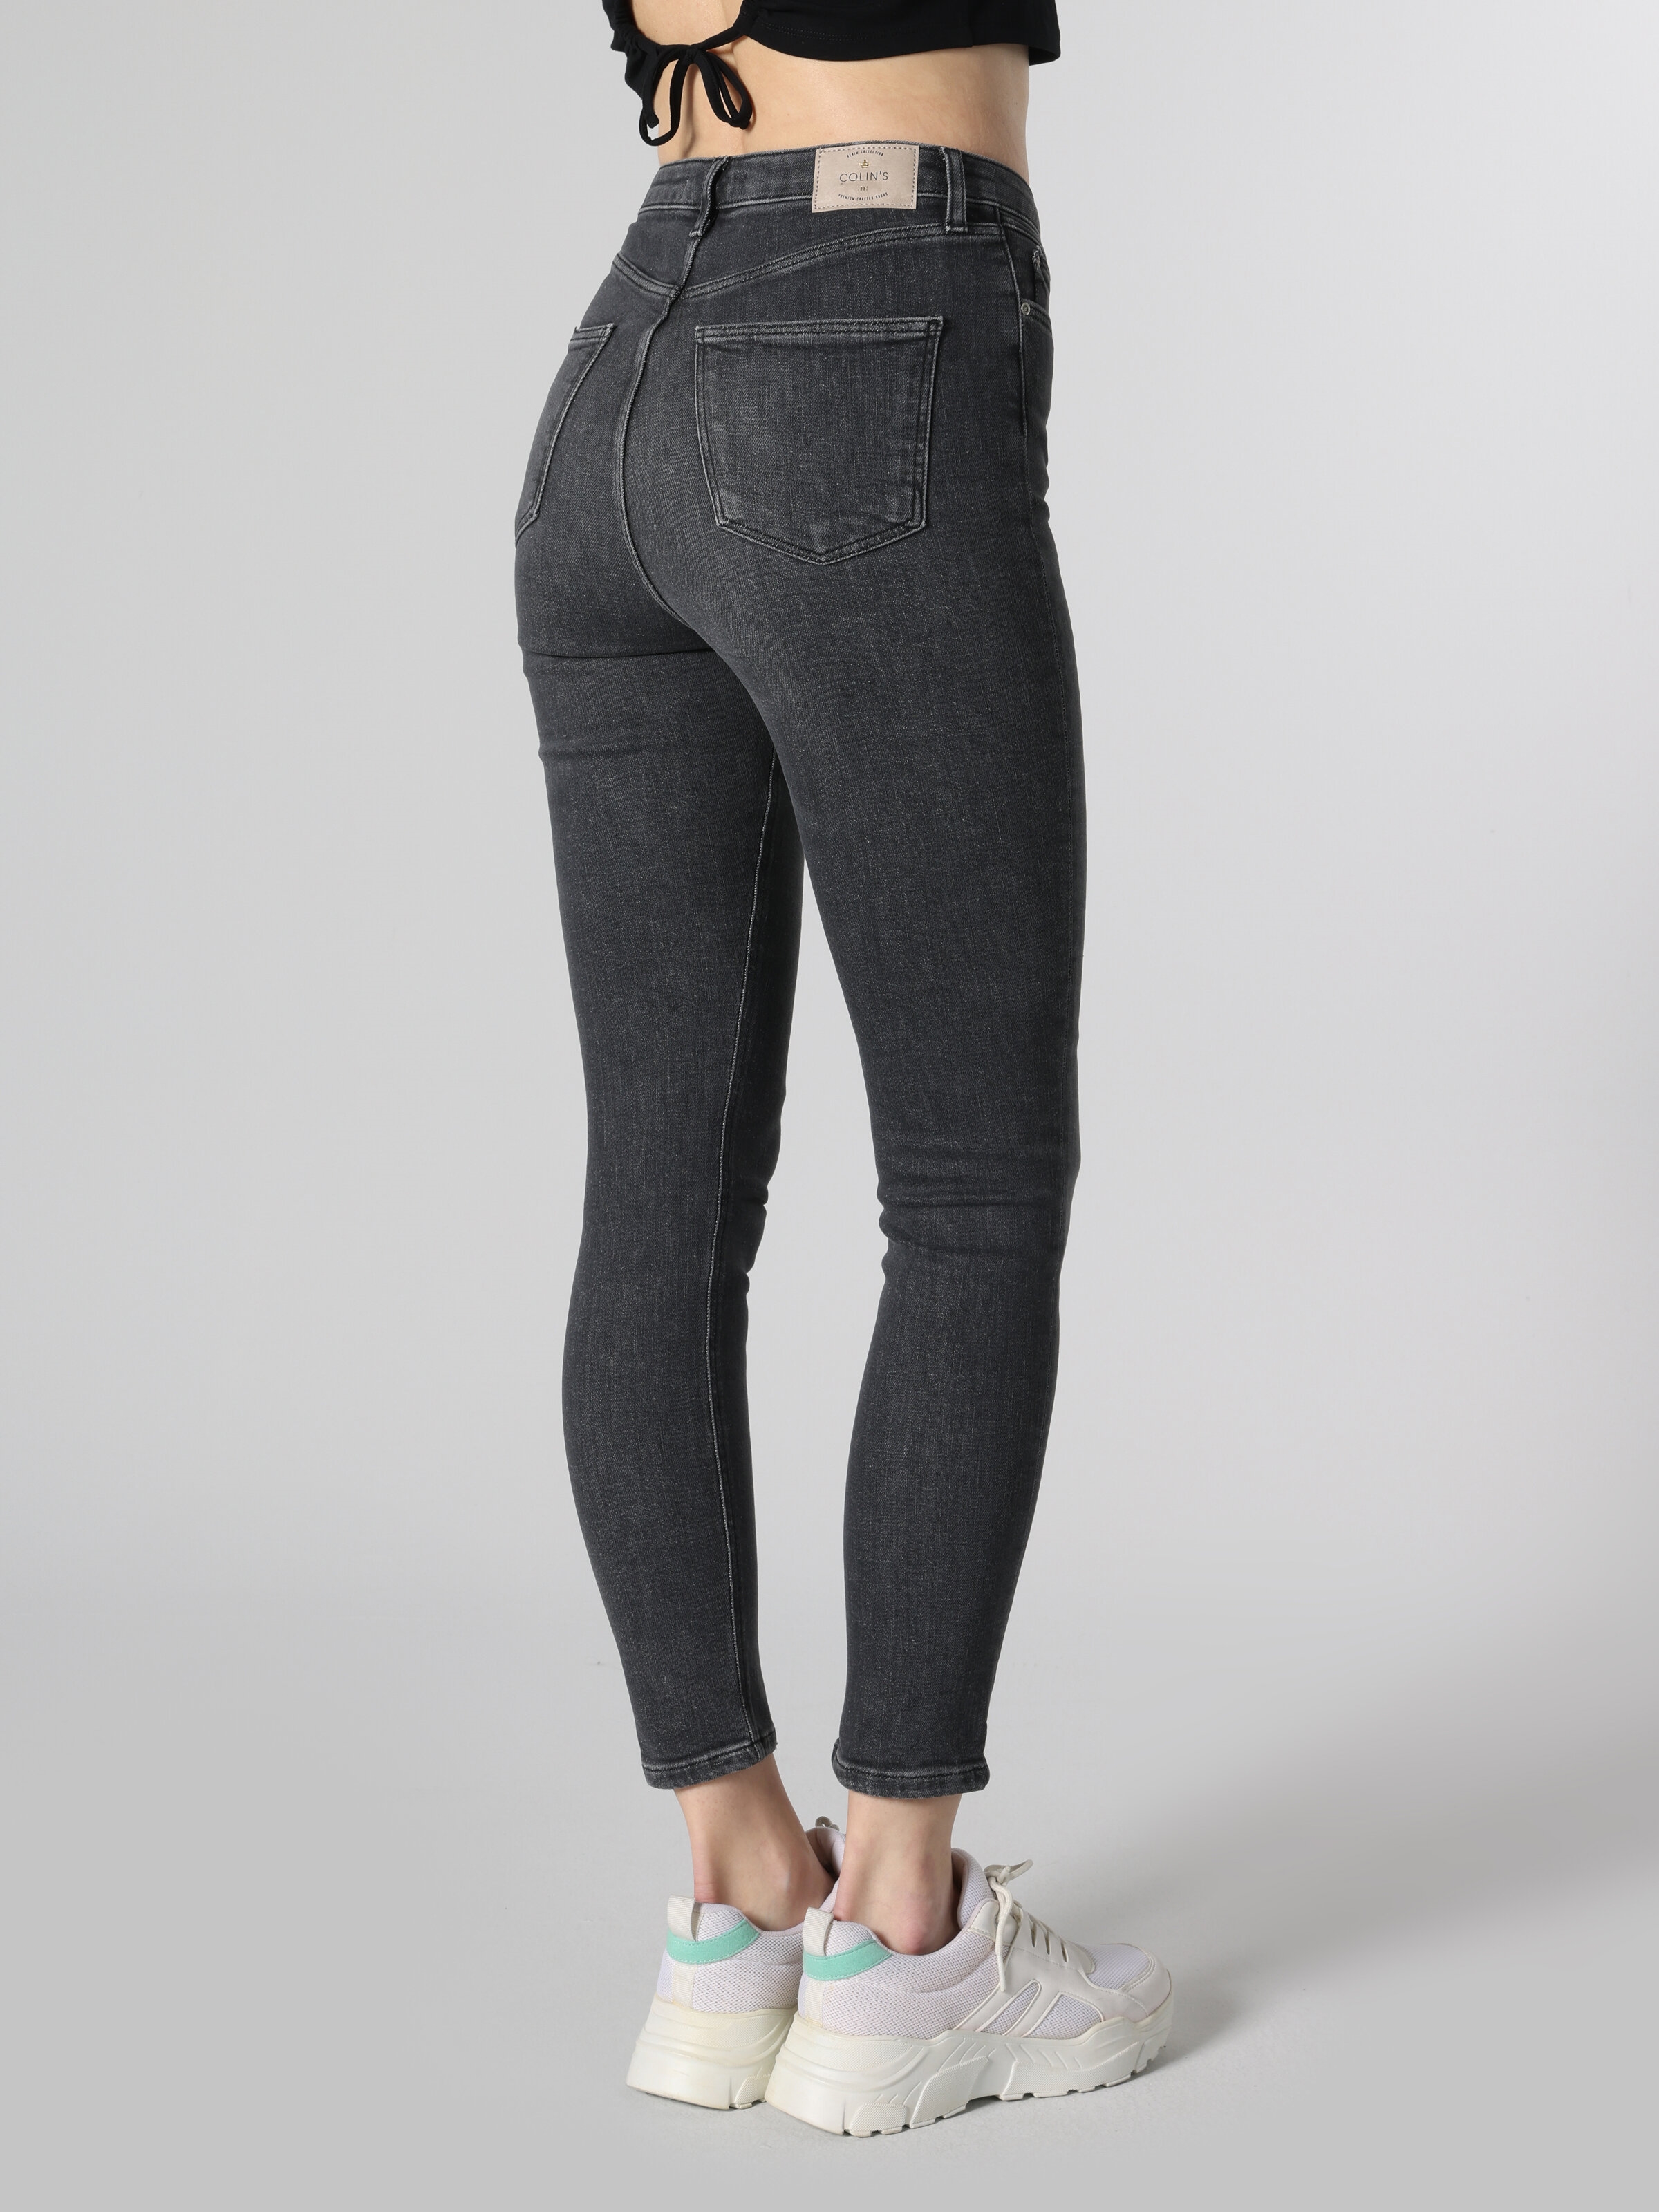 Afficher les détails de 760 Diana Super Slim Fit Taille Haute Jambe Skinny Gris Jean Pantalon Femme